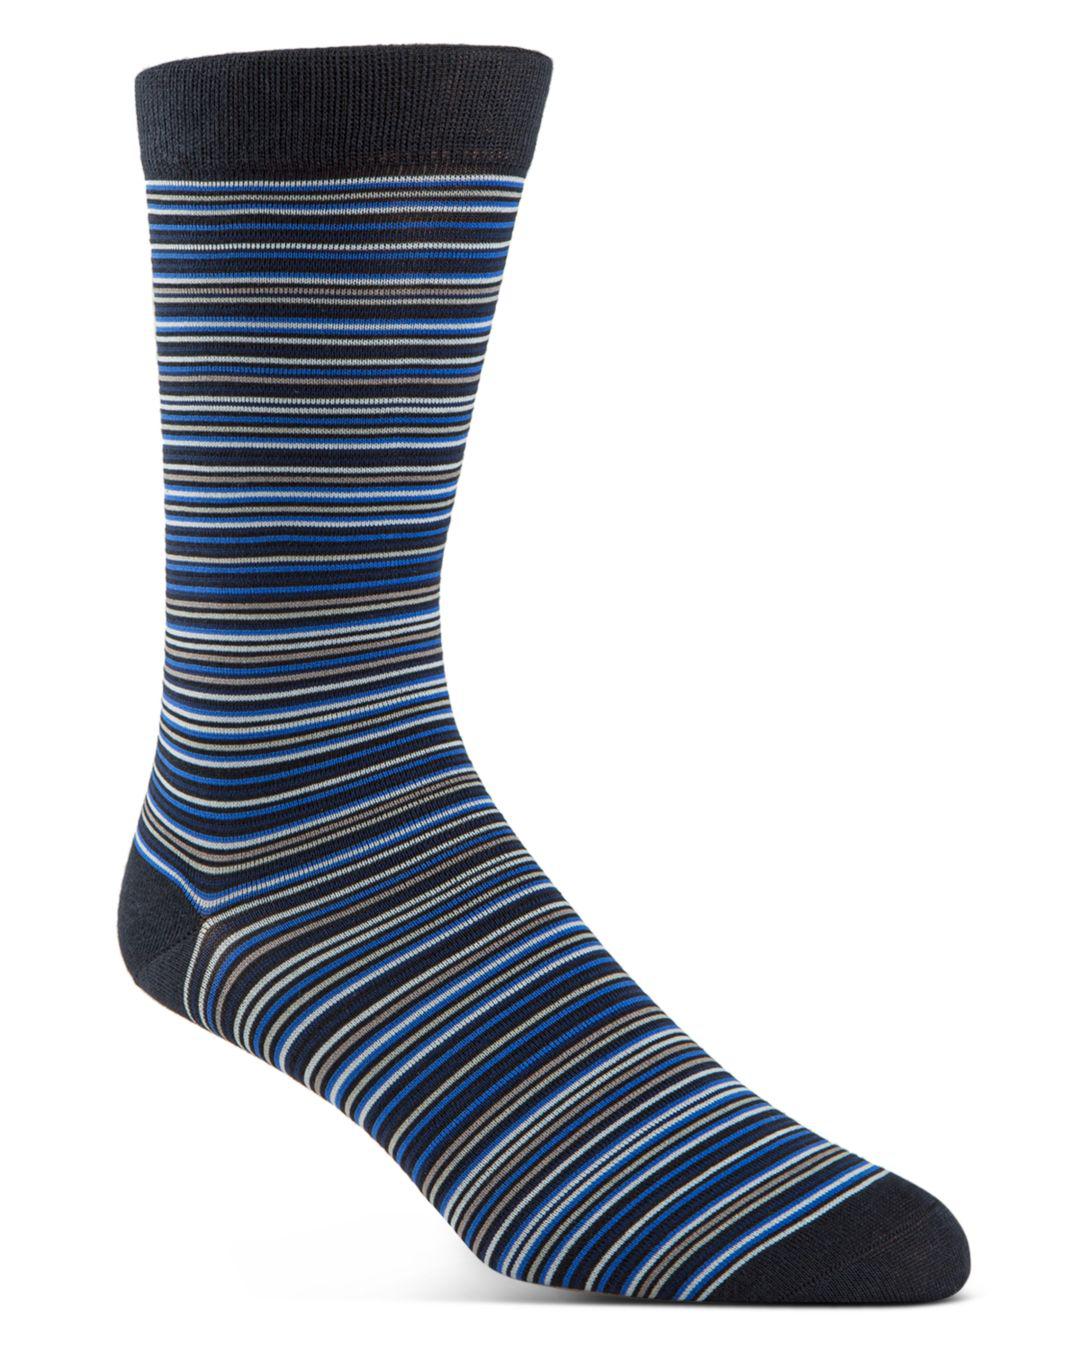 Cole Haan Synthetic Multi Stripe Dress Socks in Navy (Blue) for Men - Lyst